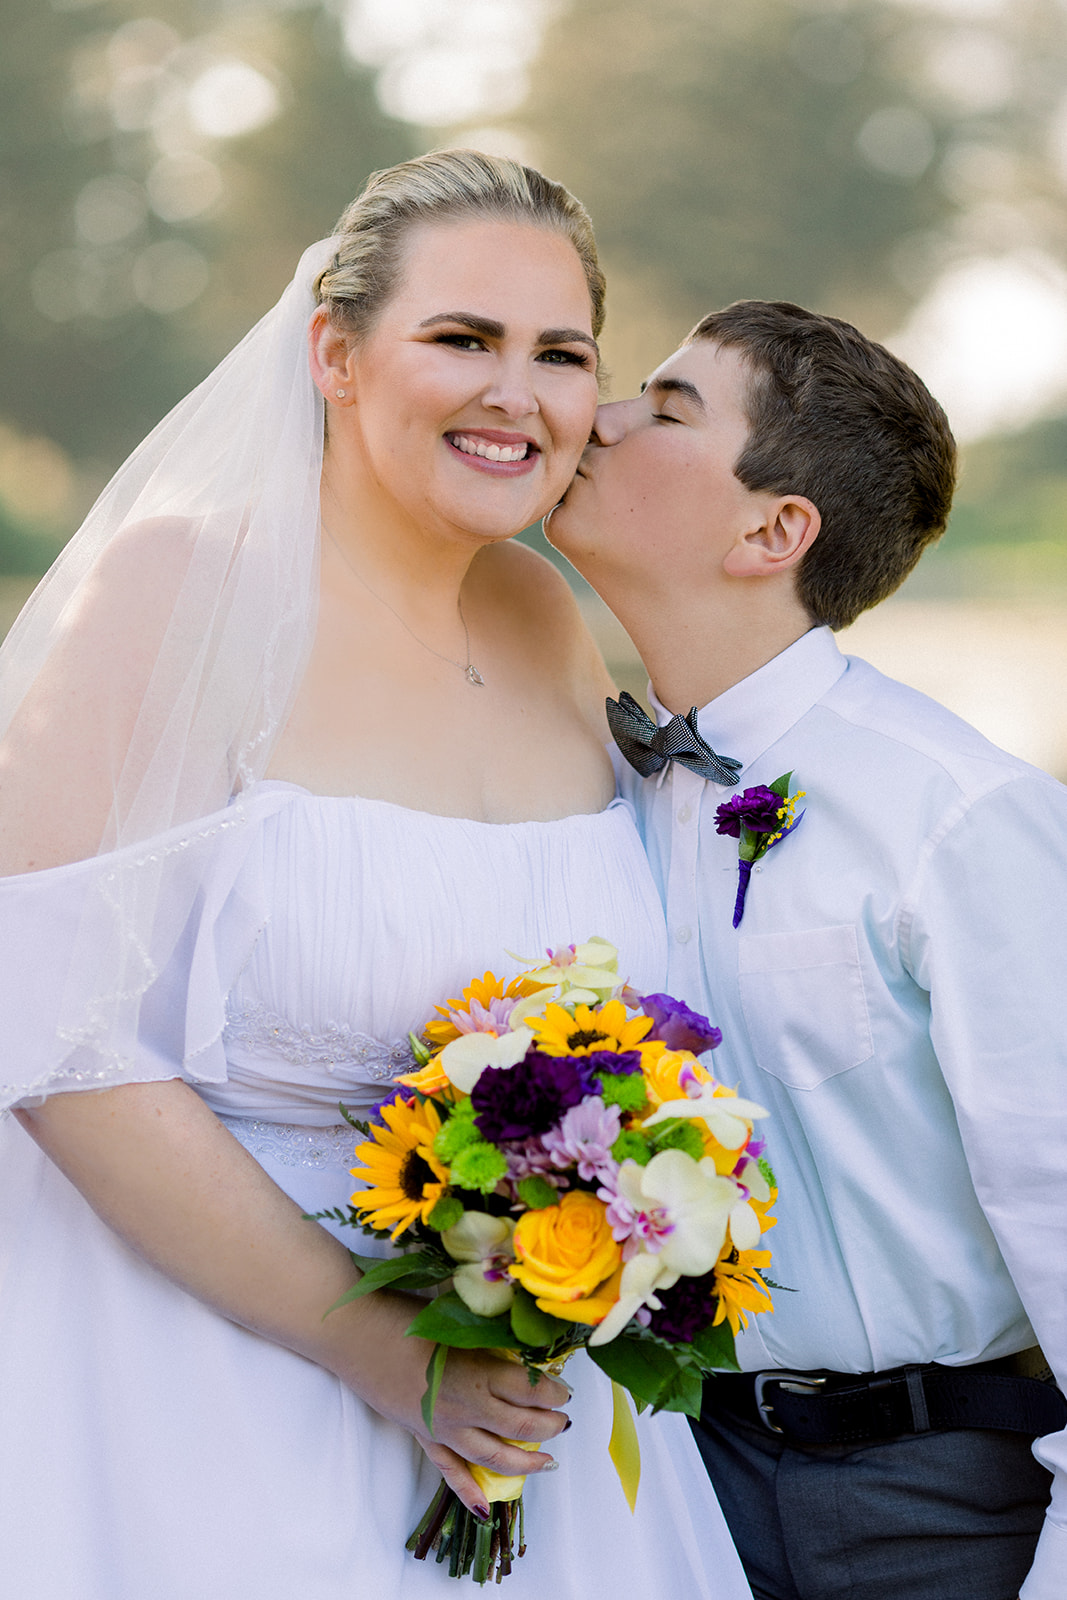 Top Wedding Photographer in SLO: Cypress Ridge Specialties